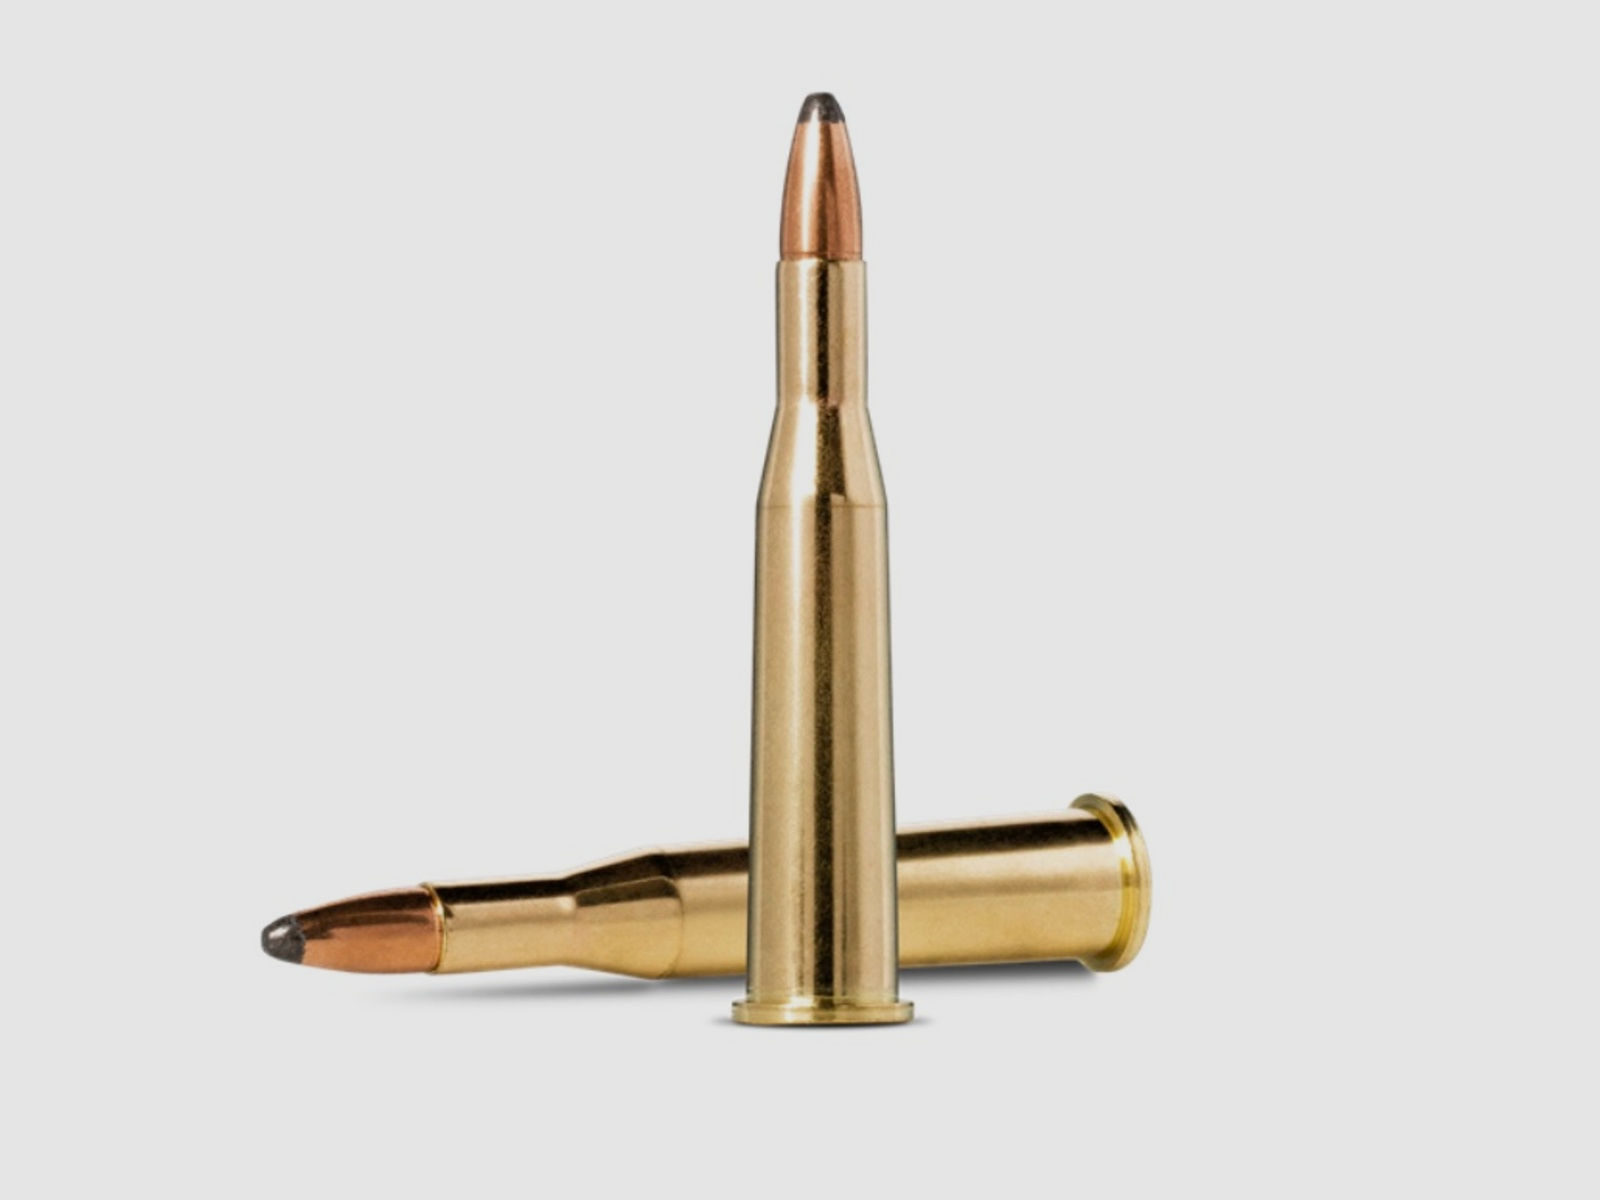 Norma 61168 5,6x52R Softpoint Teilmantel-S 4,6g 71gr Büchsenmunition